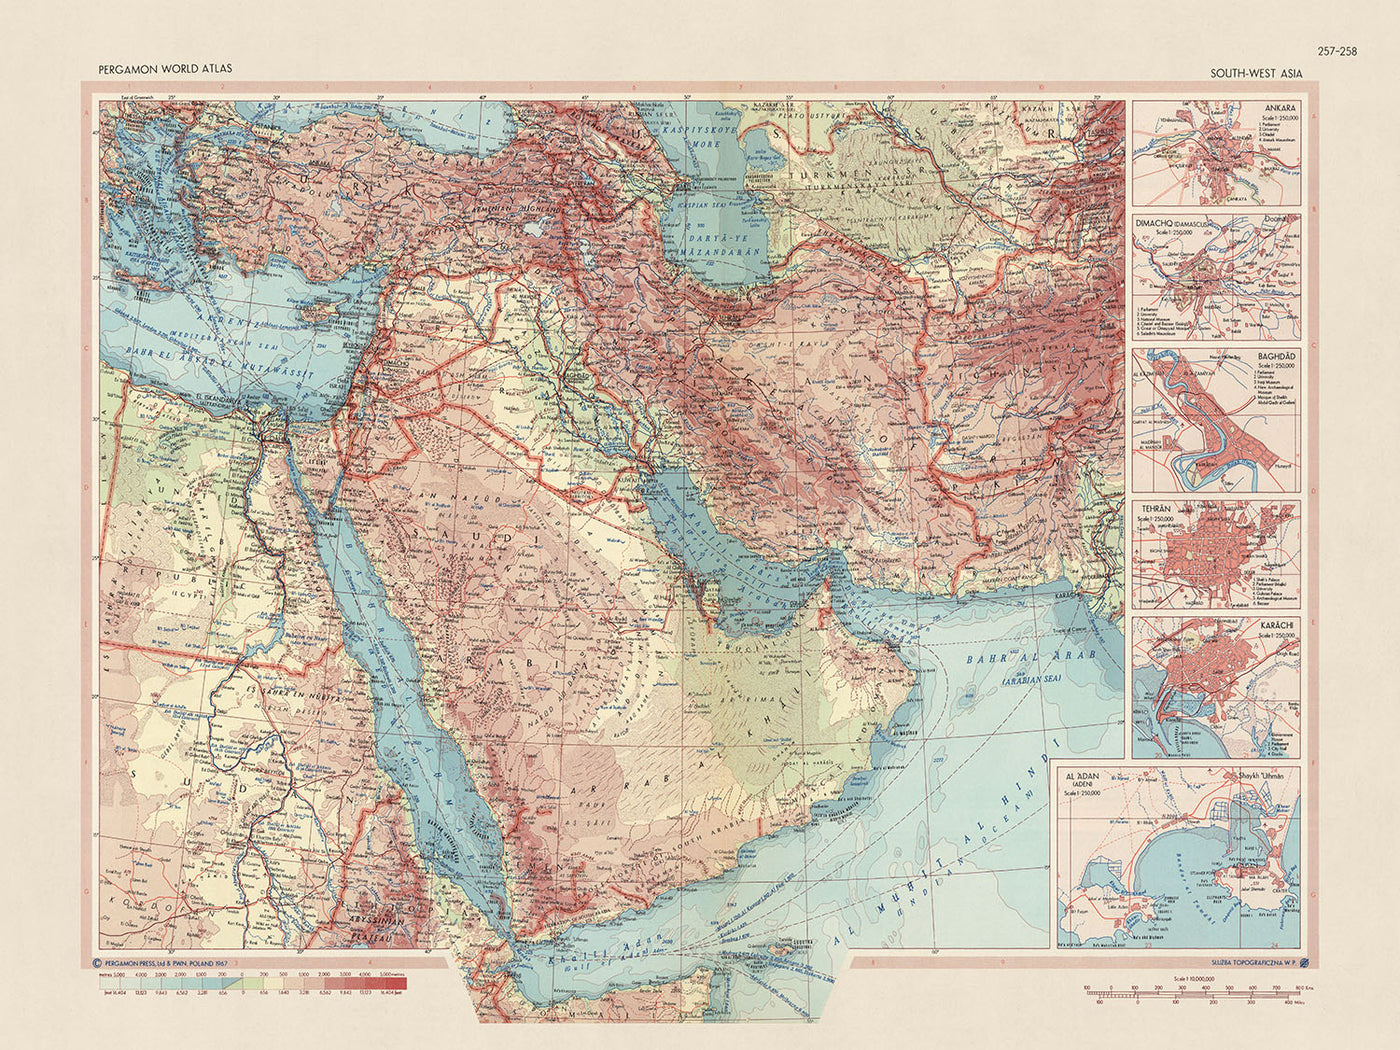 Mapa del Viejo Mundo del Sudoeste de Asia por el Servicio de Topografía del Ejército Polaco, 1967: Mapa político y físico detallado del Medio Oriente